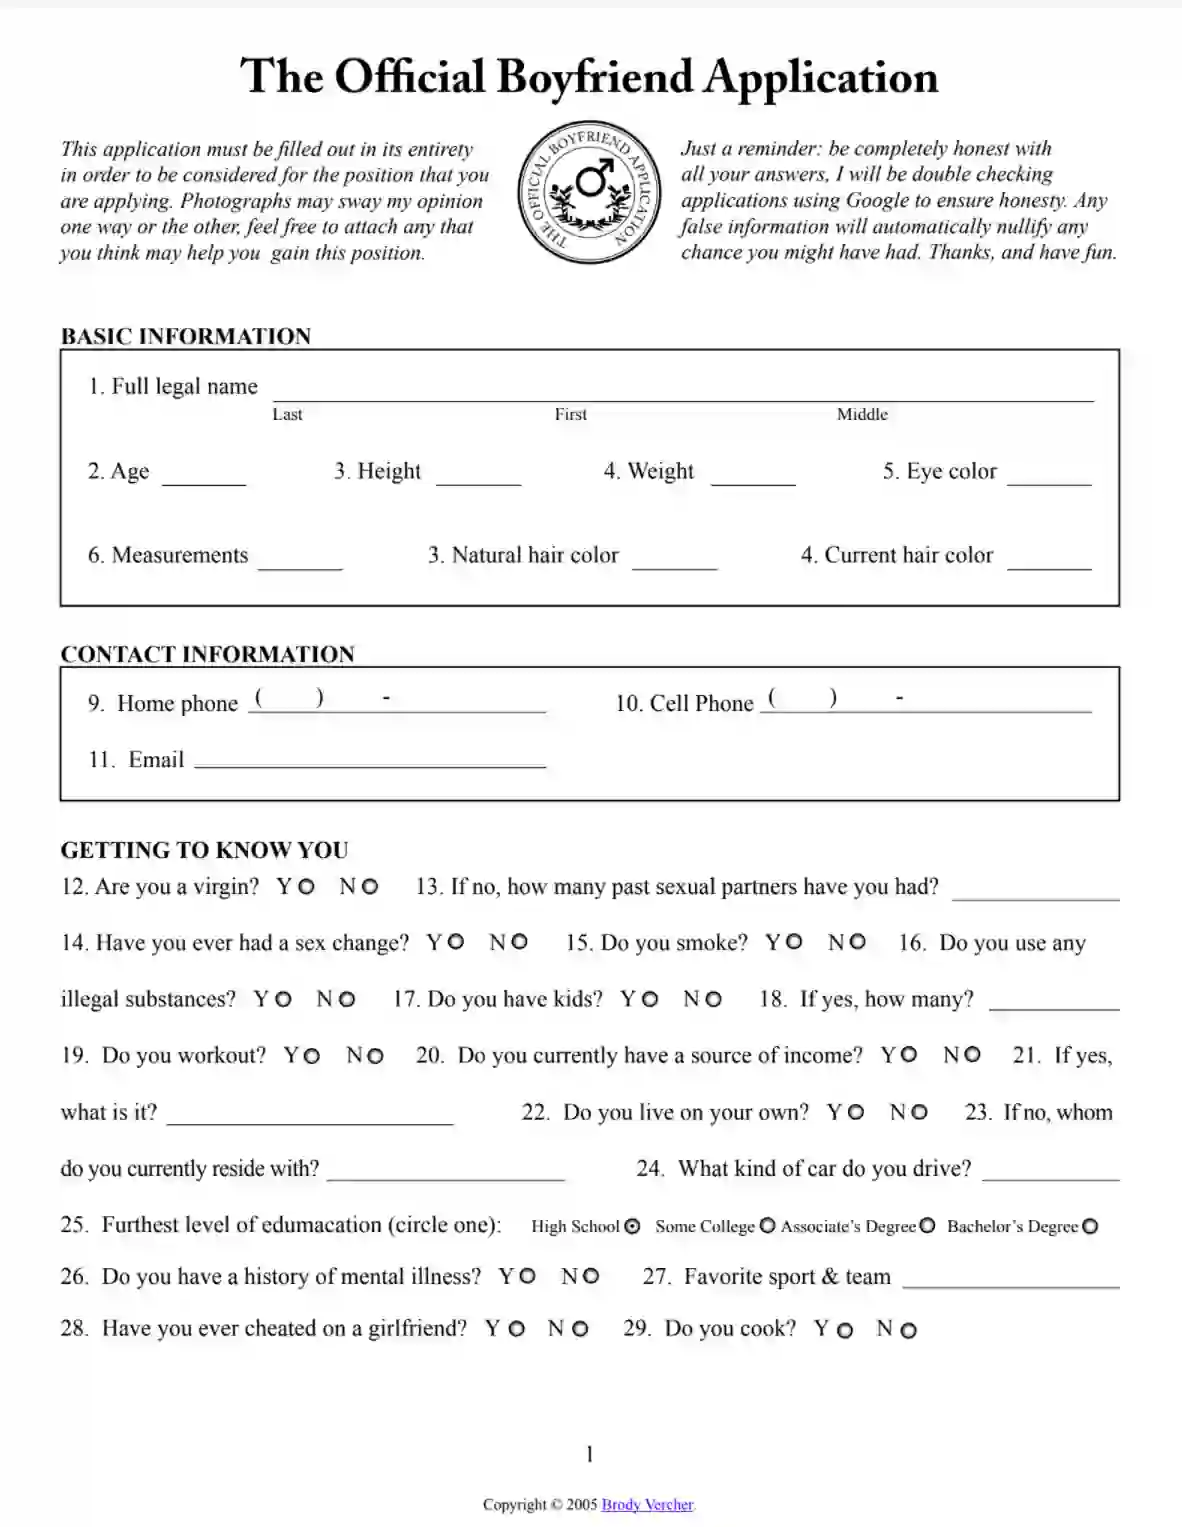 boyfriend application form